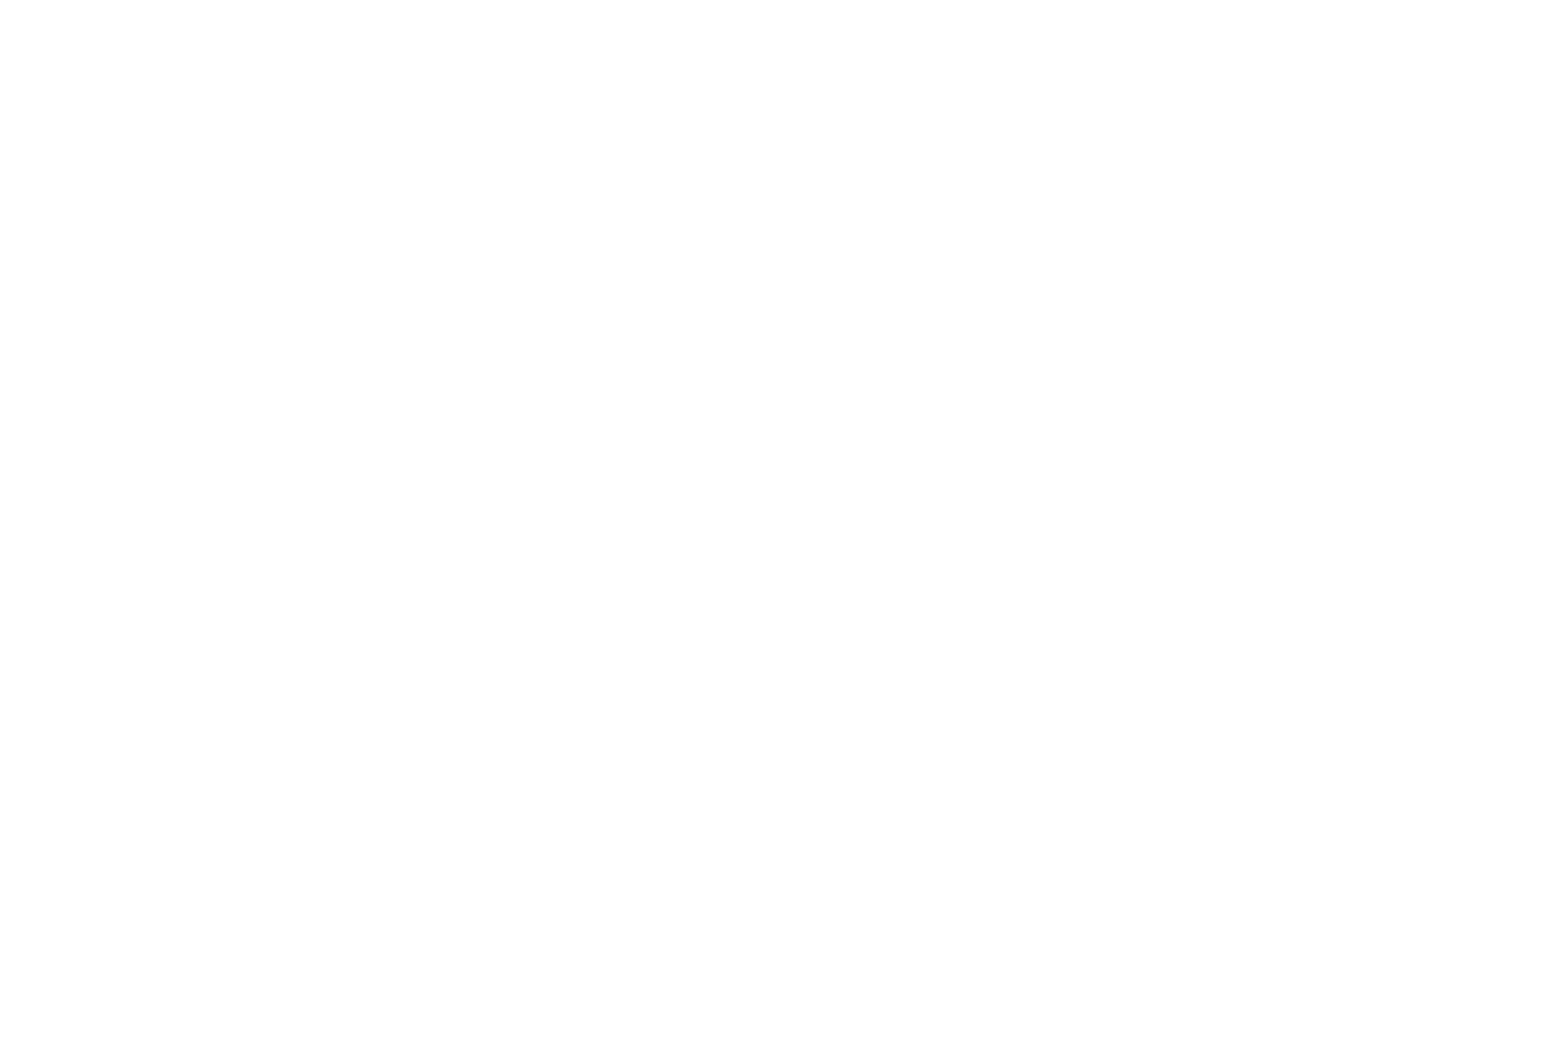 Erzgebirgscontainer